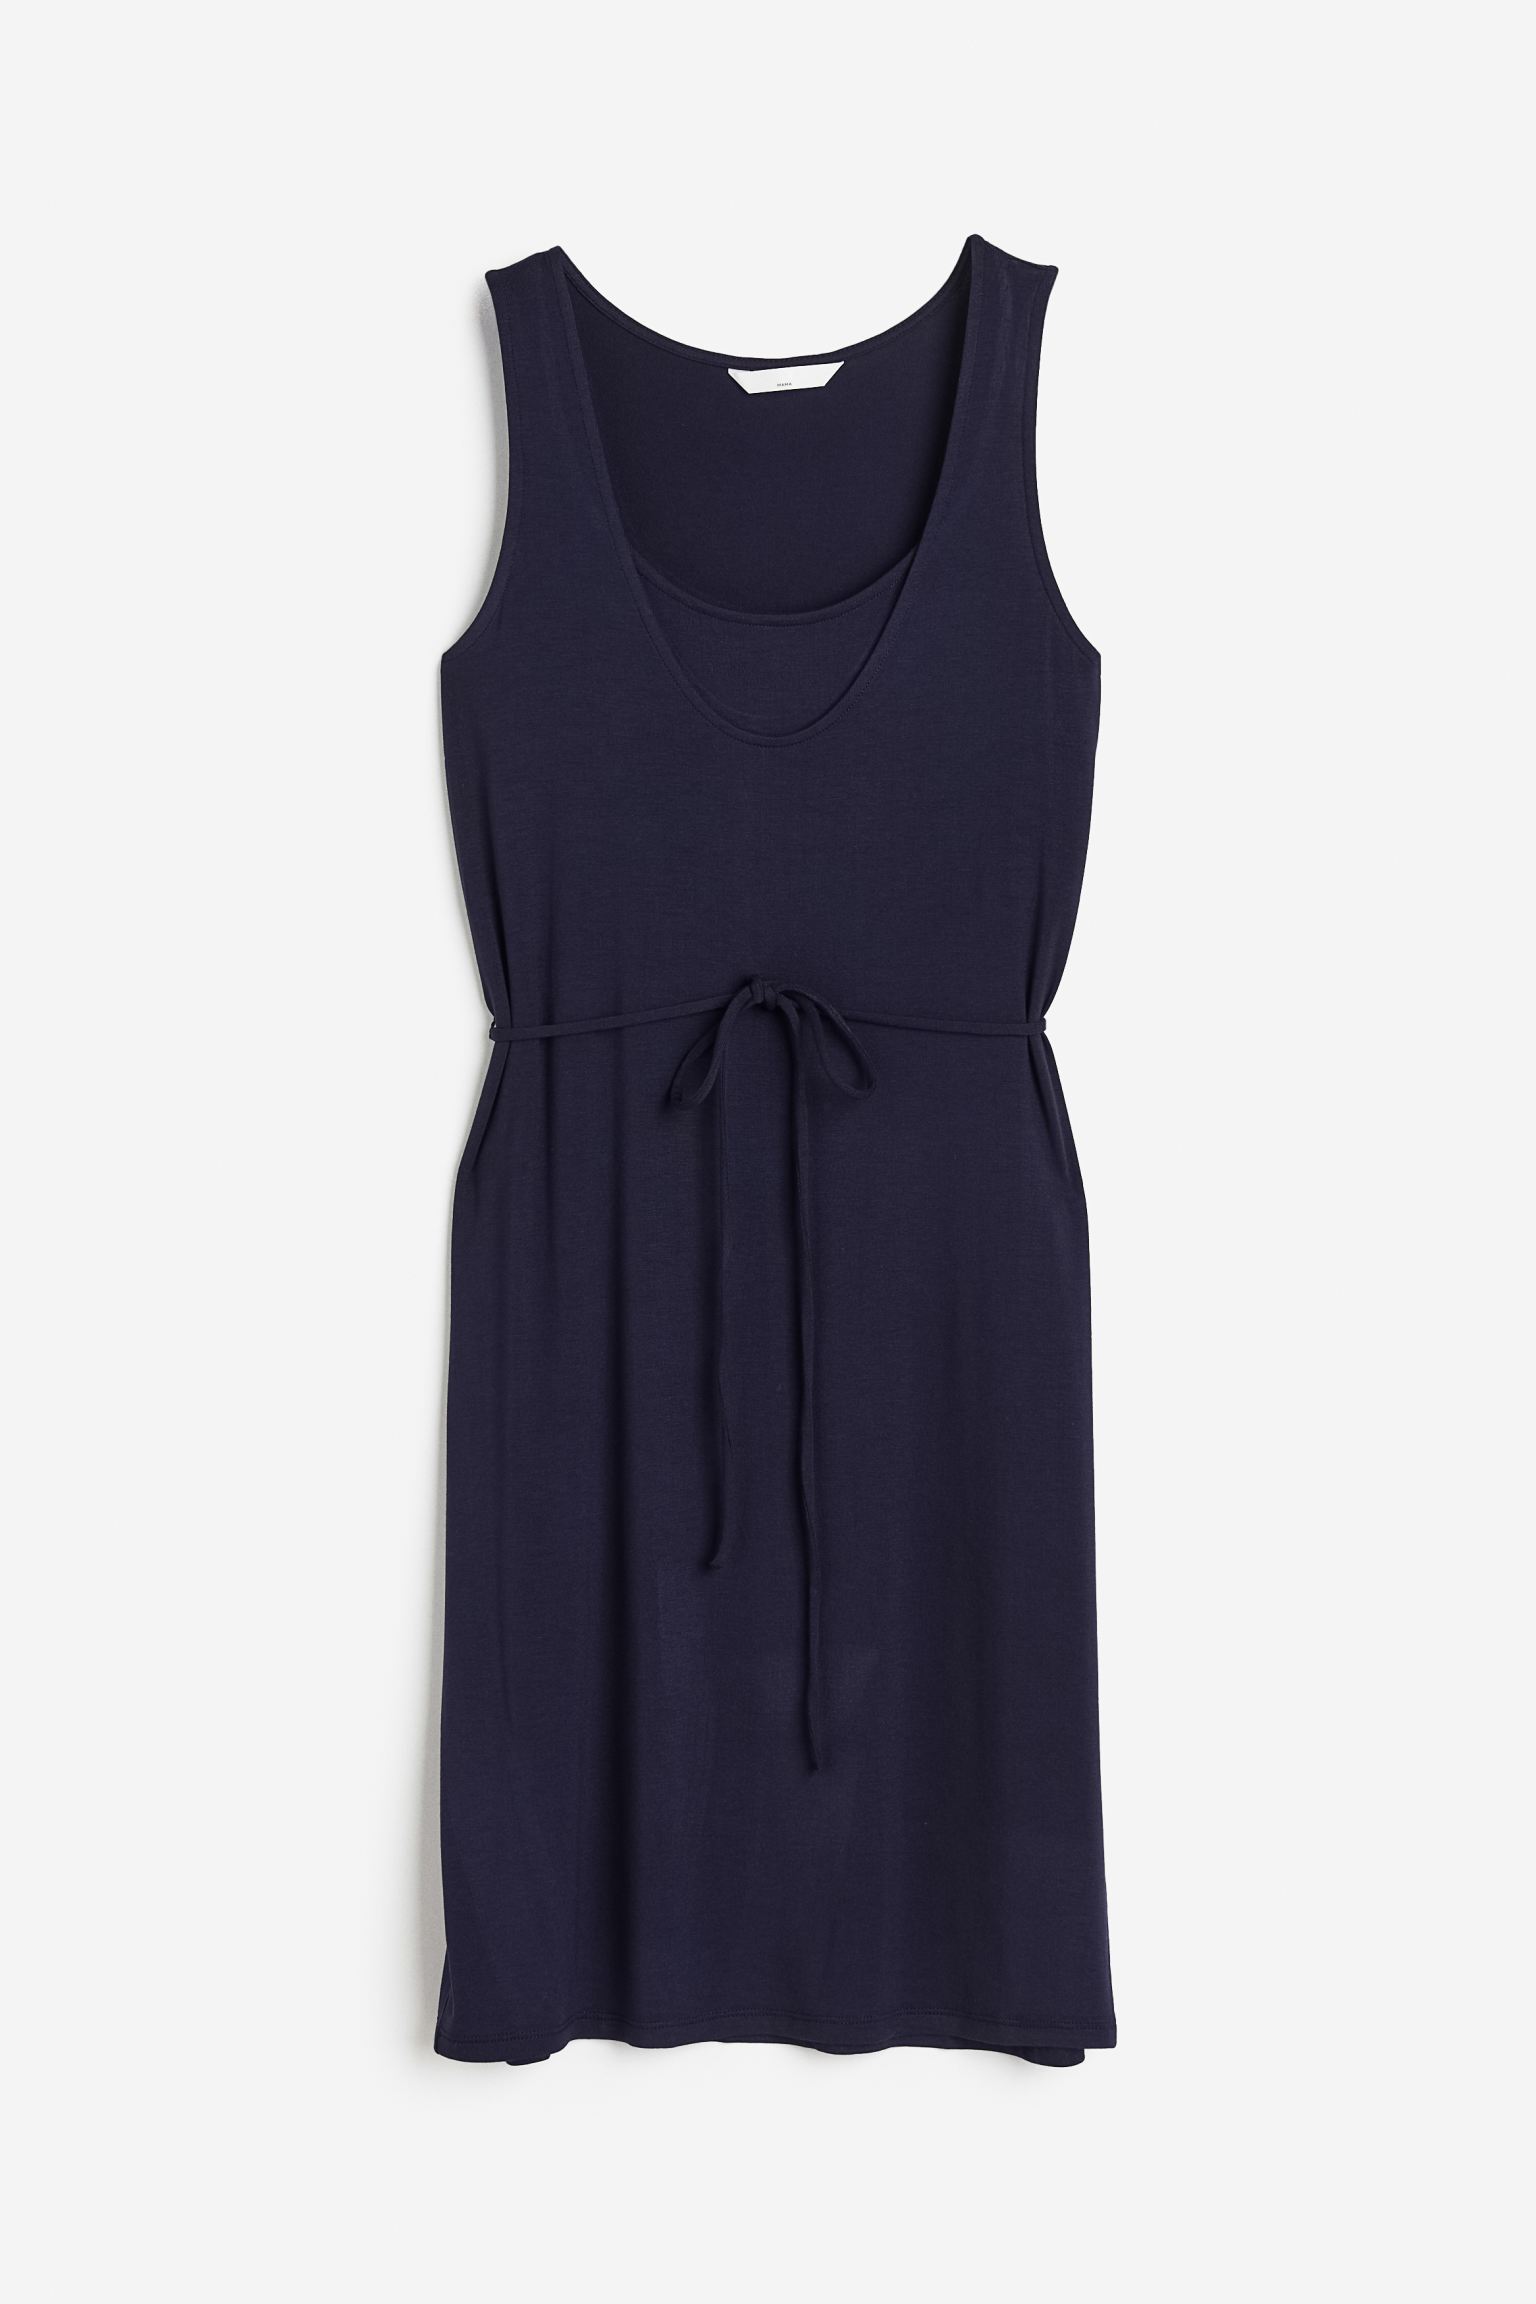 Платье женское H&M 1116459002 синее L (доставка из-за рубежа)